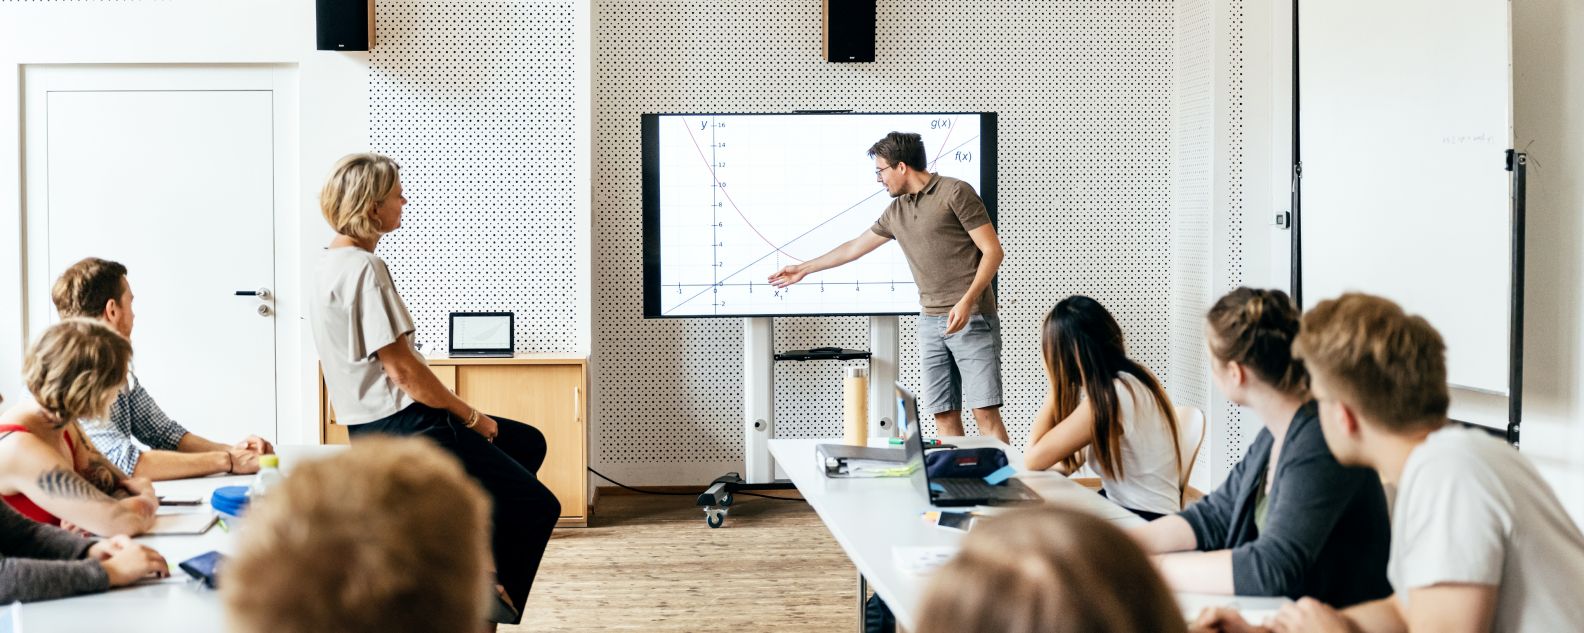 Un estudiante hace una presentación a la clase durante una sesión de seminario y utiliza un monitor grande como ayuda visual